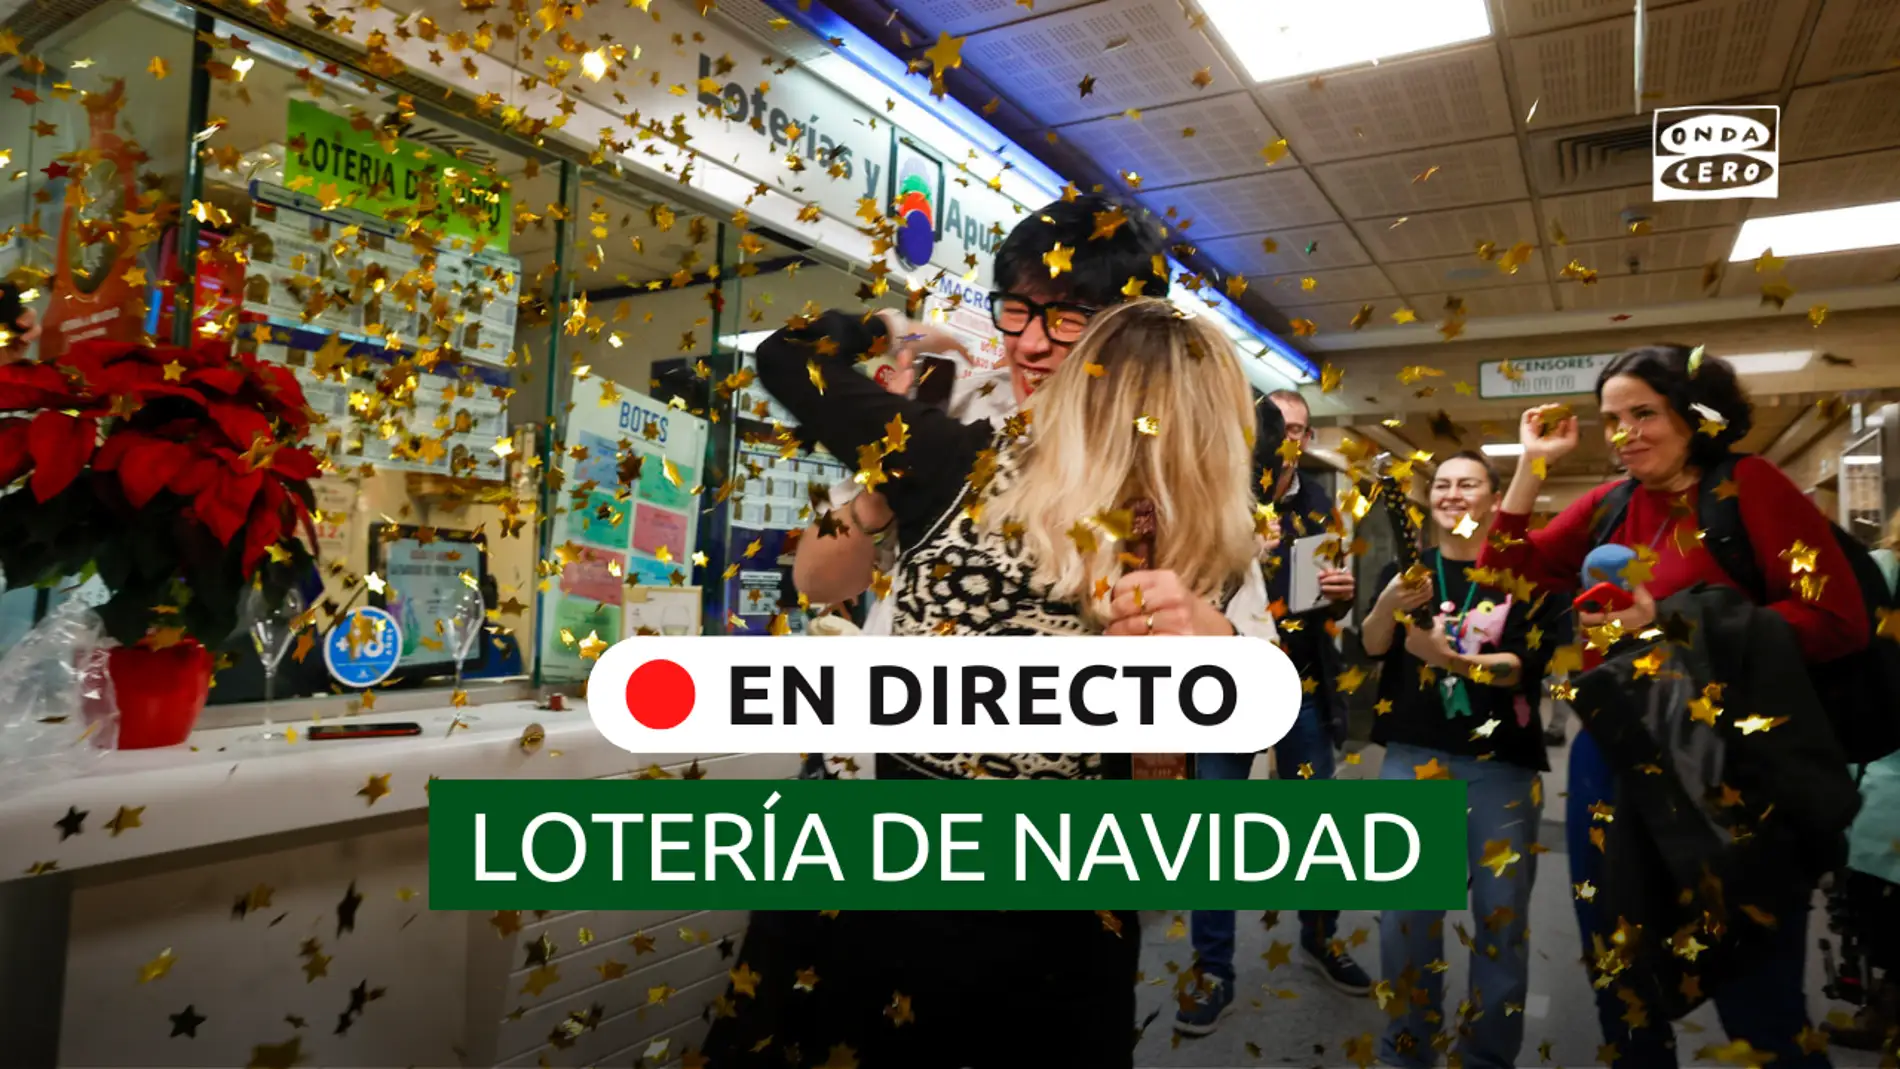 DIRECTO - Celebración premio Gordo Lotería Navidad